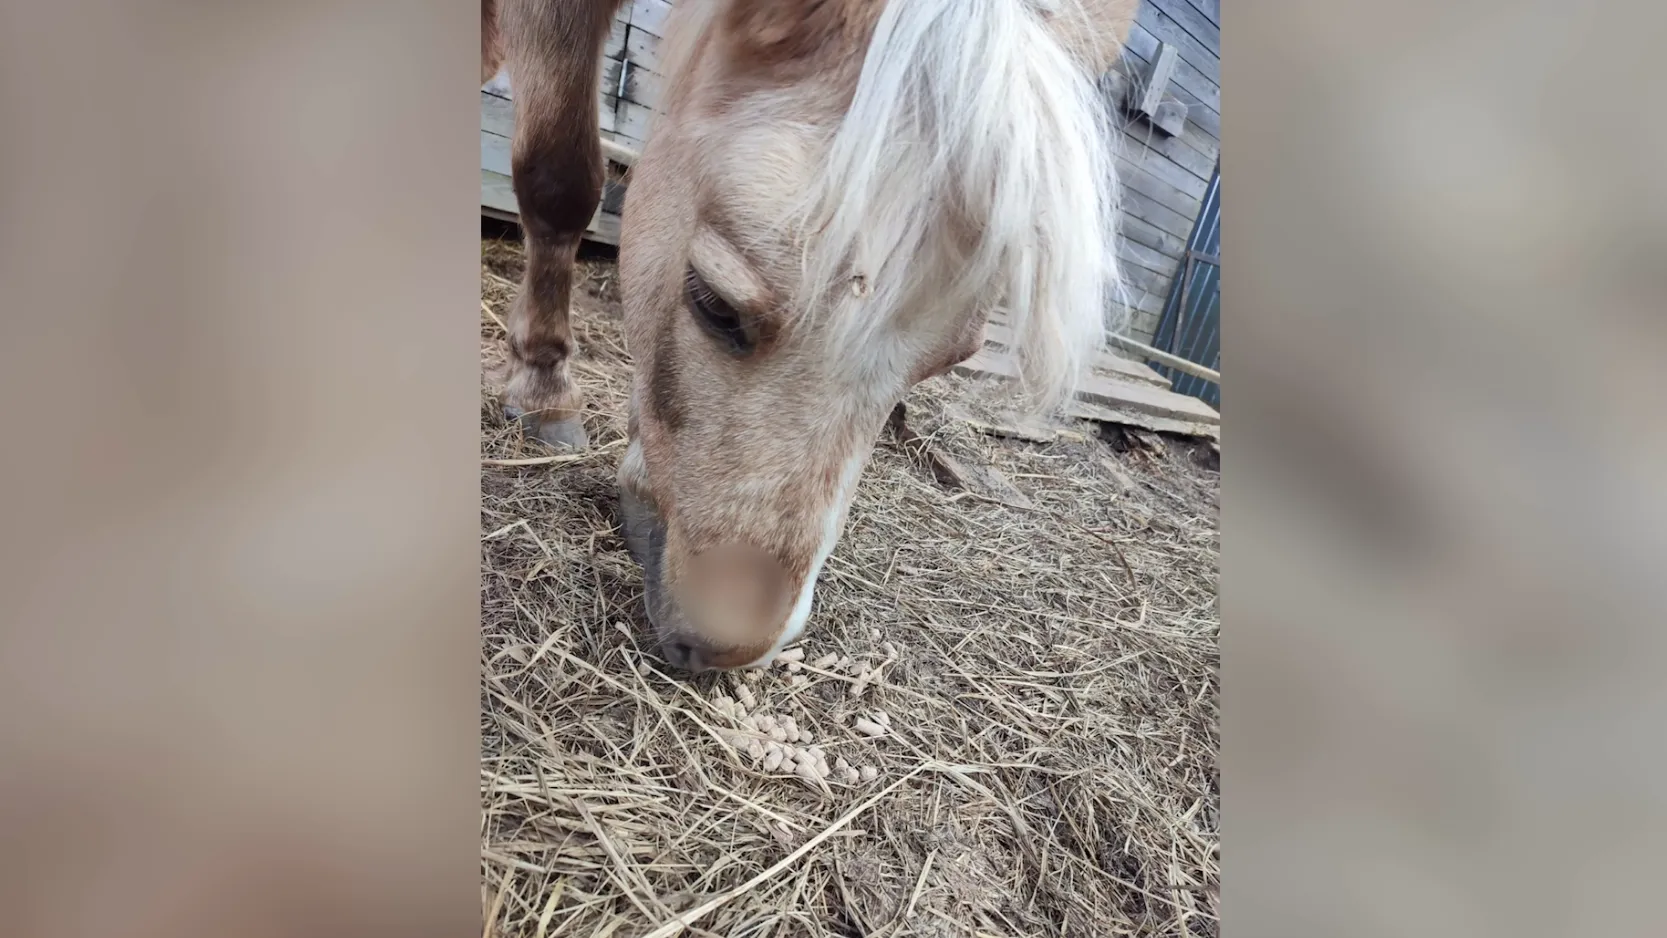 Стрелок открыл охоту на обитателей новгородской конюшни, пострадали три лошади